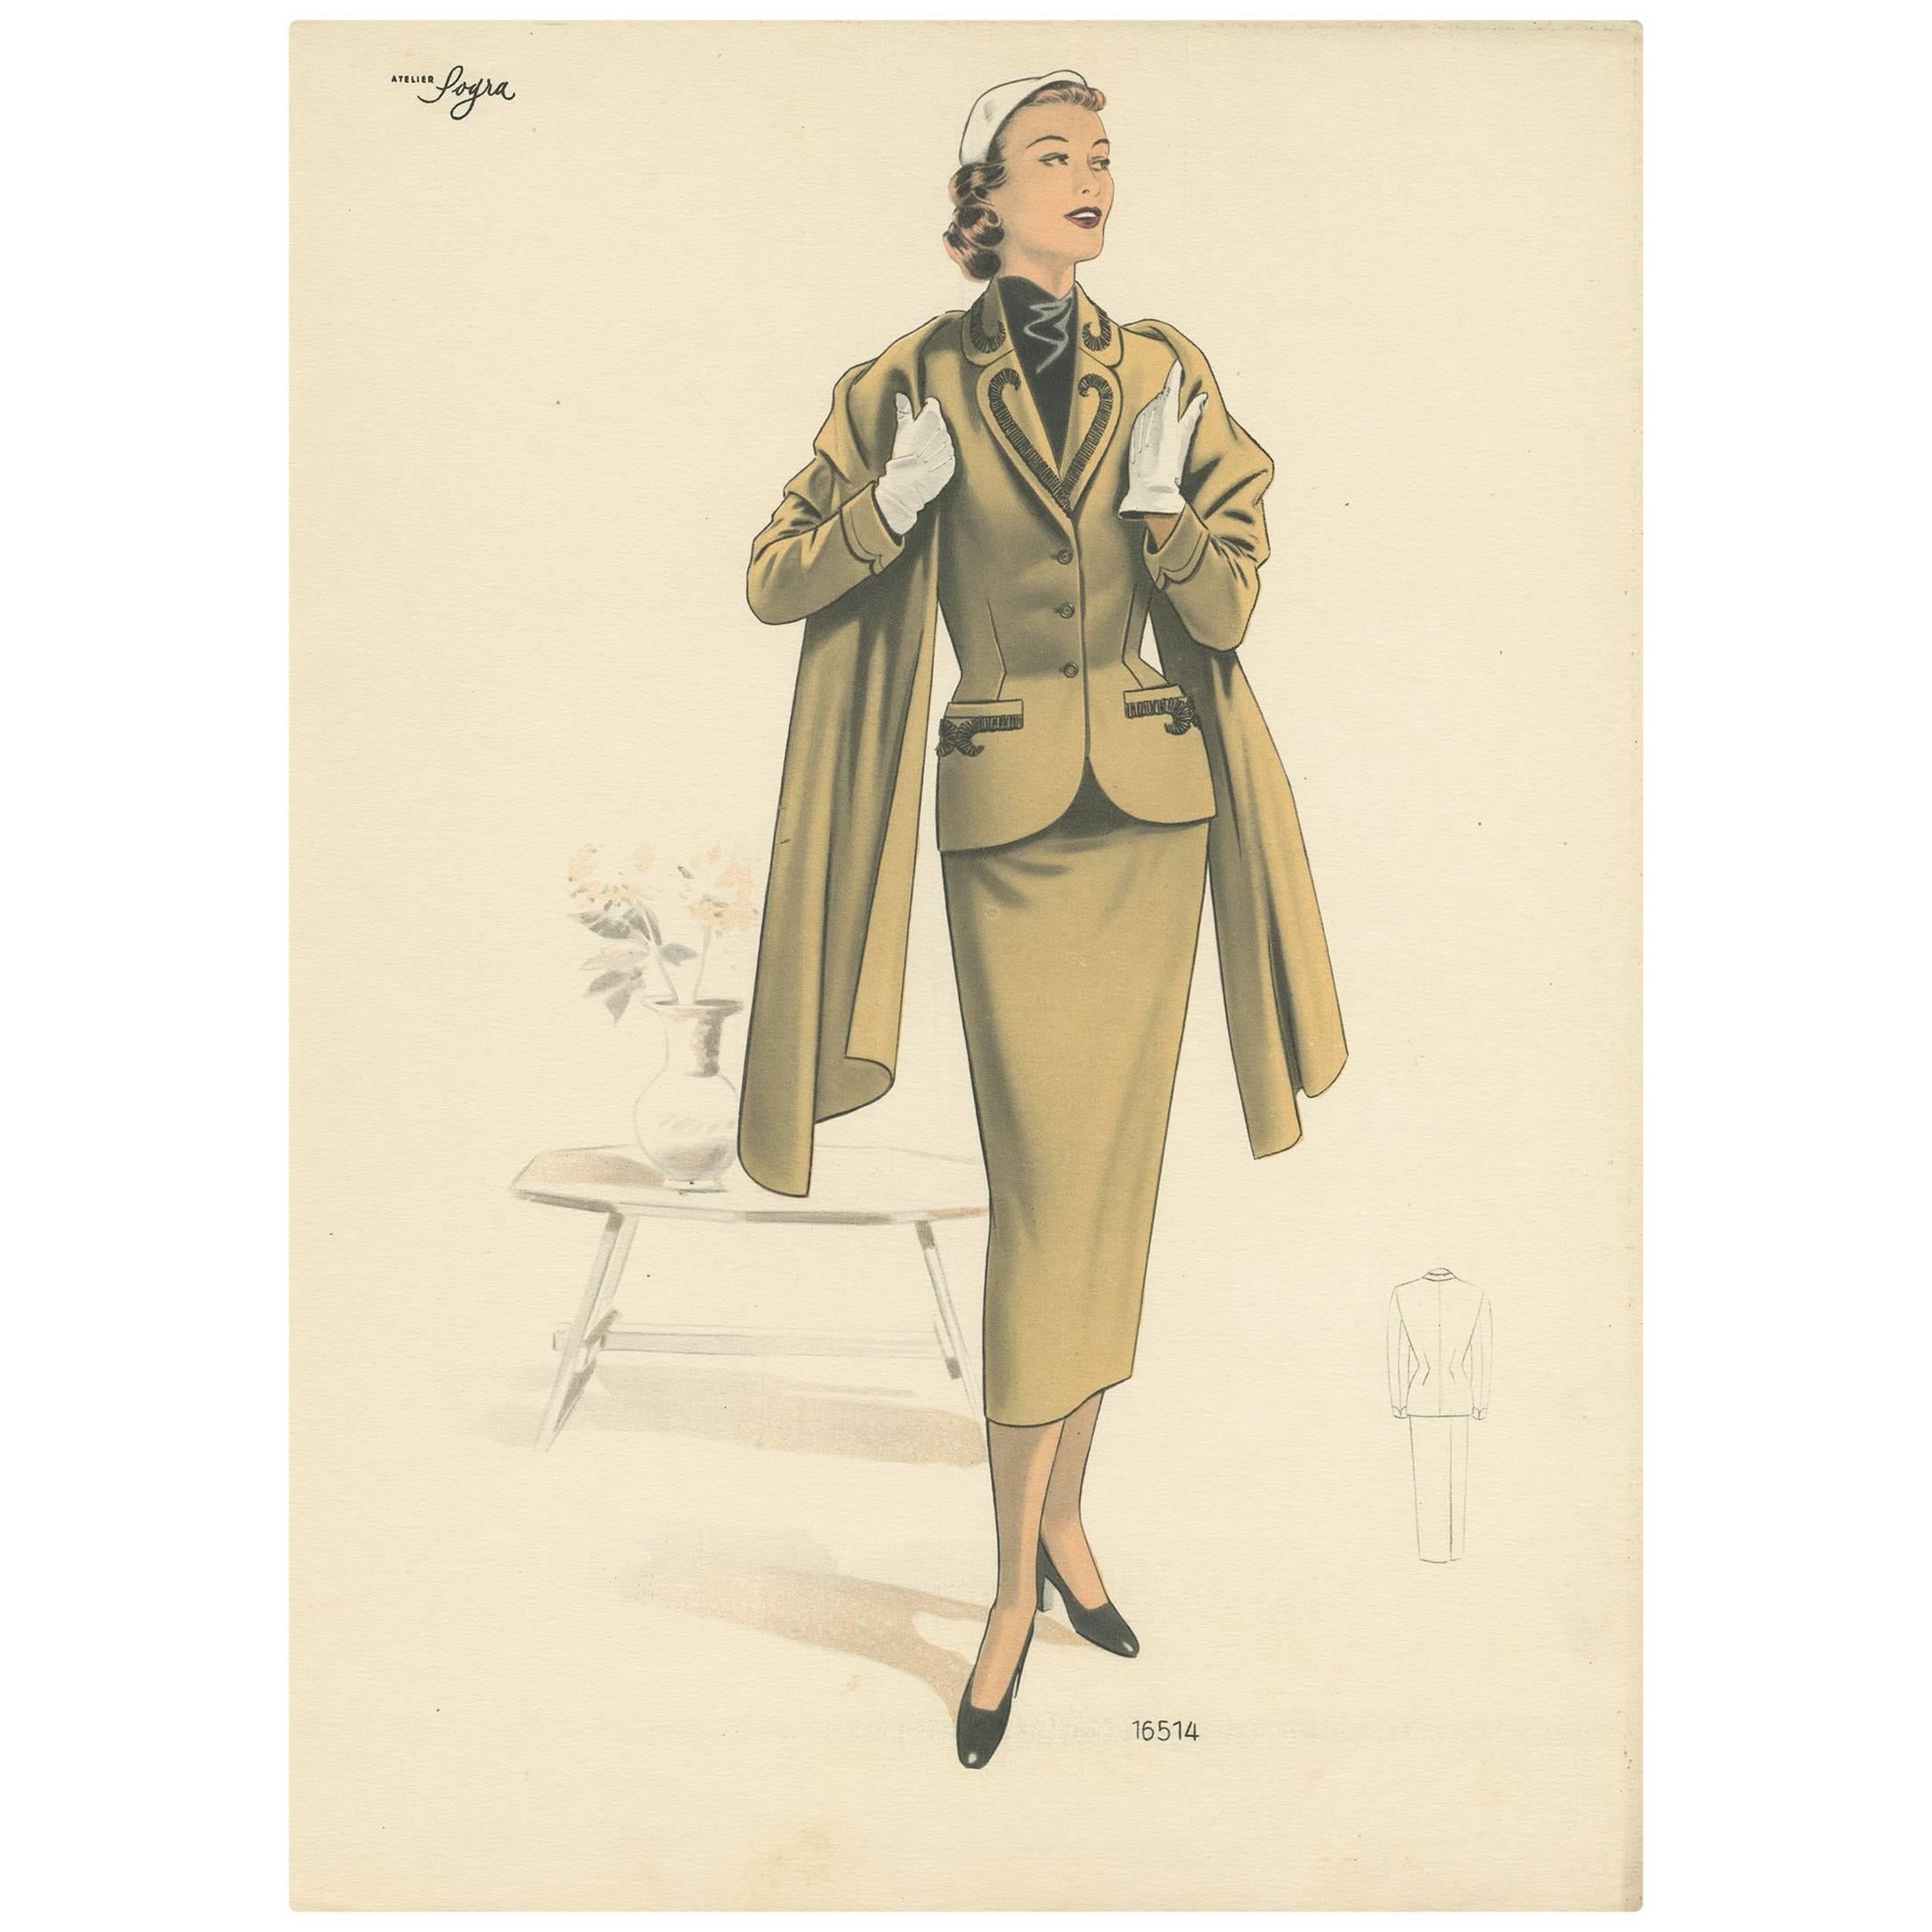 Impression de mode vintage 'Pl. 16514' publiée dans Le Tailleur Moderne, 1954